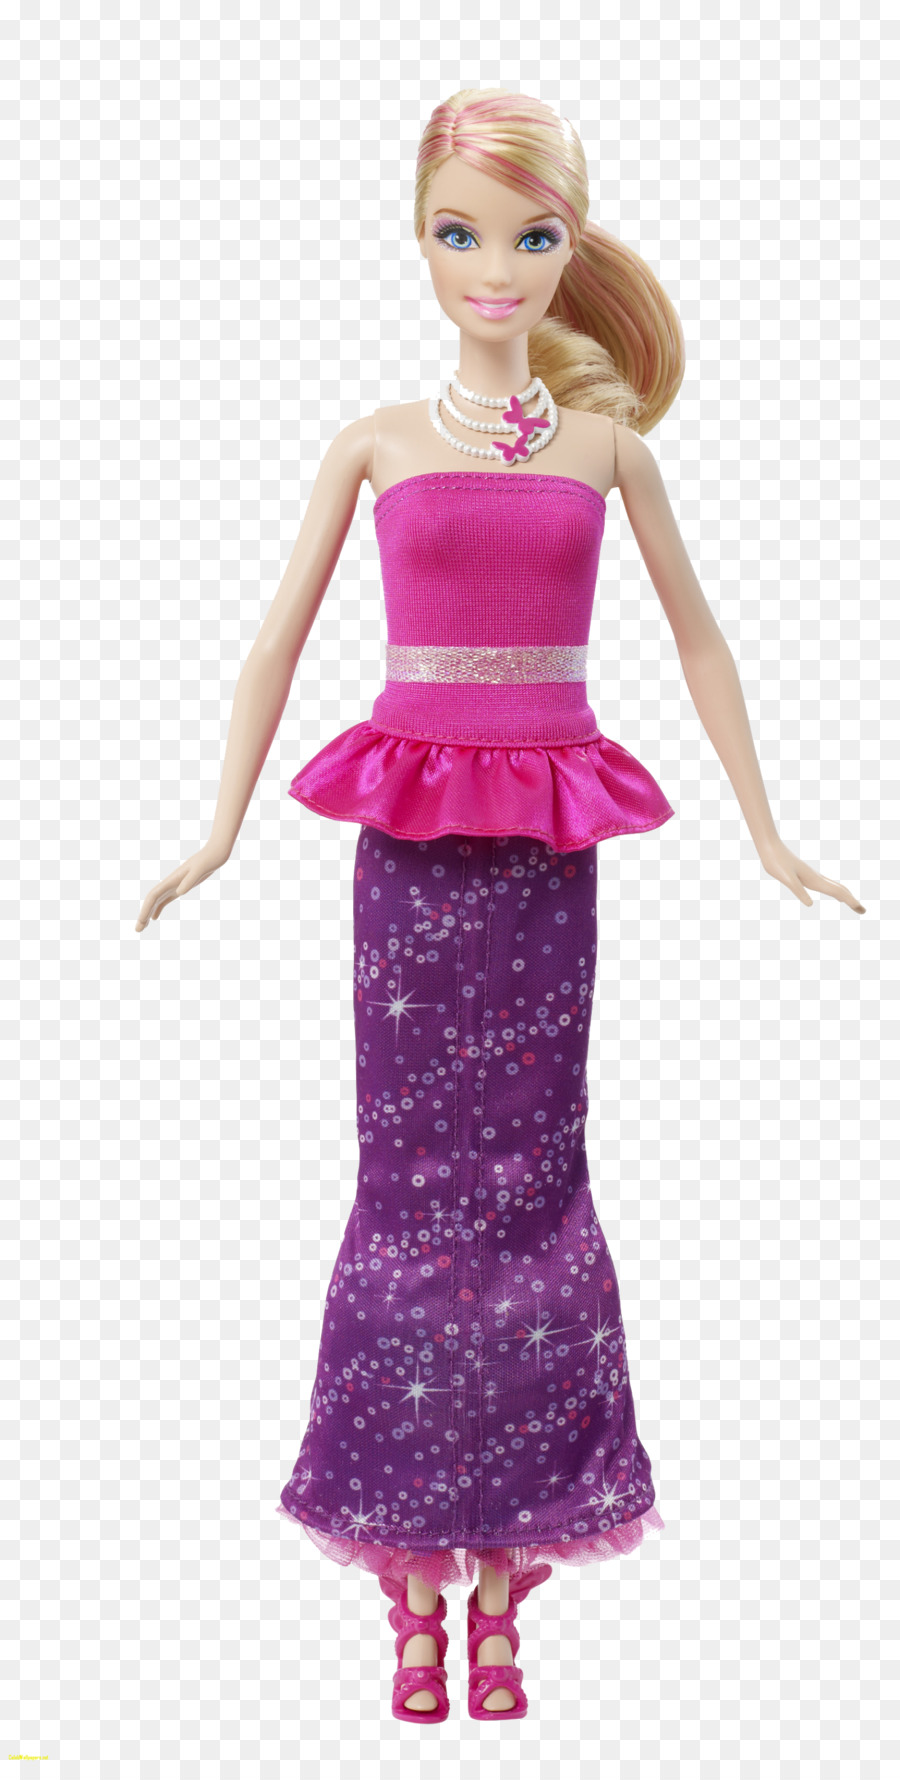 Barbie: A Fairy Secret Doll Clip art - barbie png download - 1600*3145 - Free Transparent Barbie A Fairy Secret png Download.